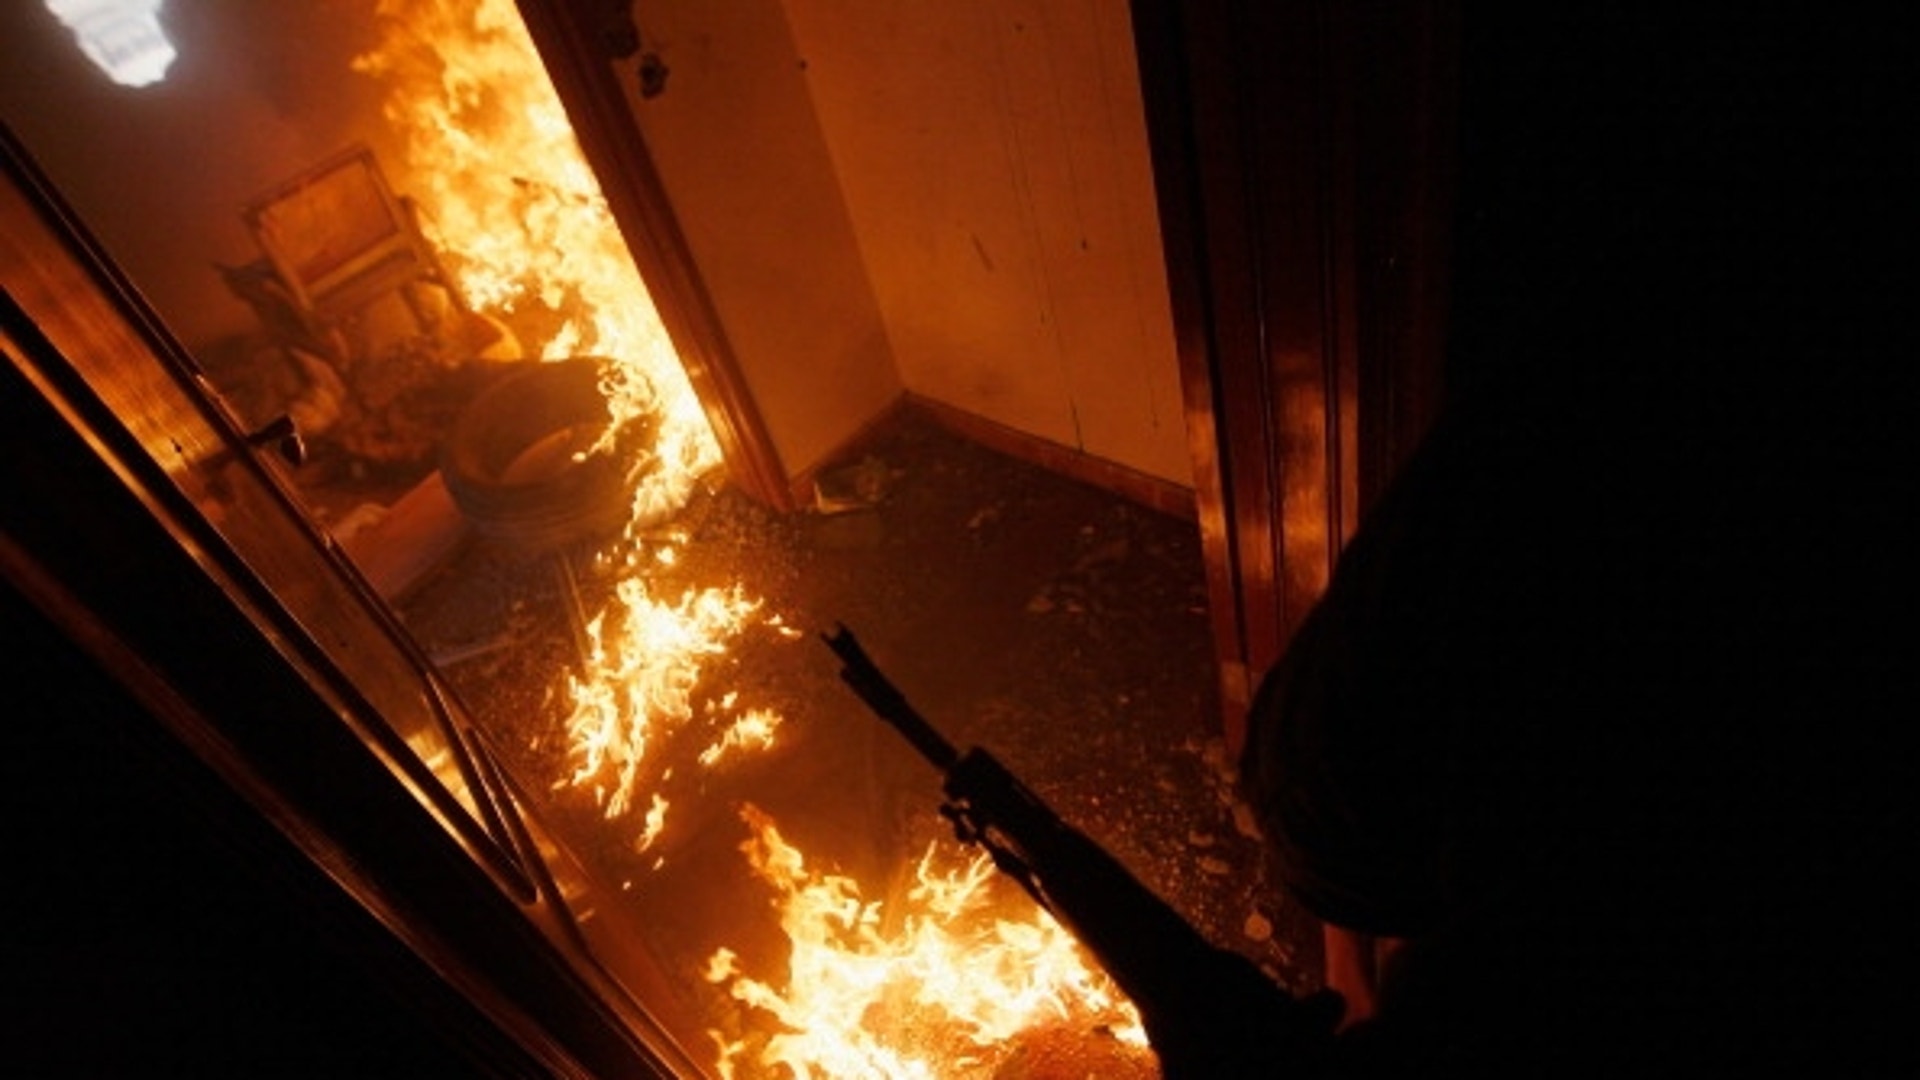 Видео пожара внутри. Комната в огне. Пожар внутри здания. Пожары внутри помещений. Огонь в квартире.